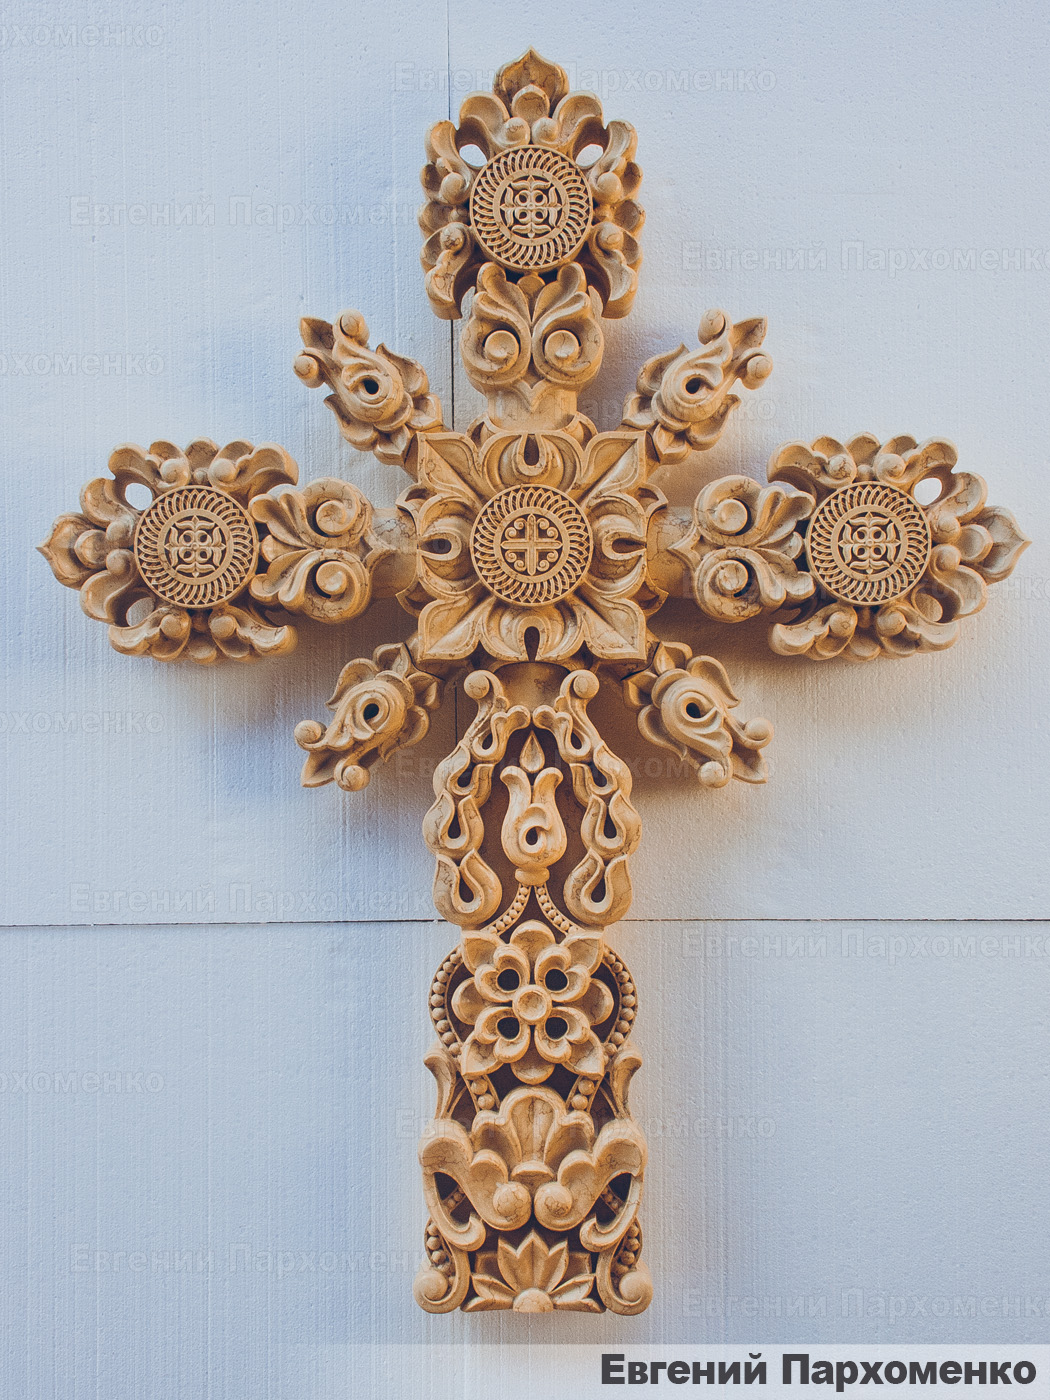 Мраморный крест в неорусском стиле